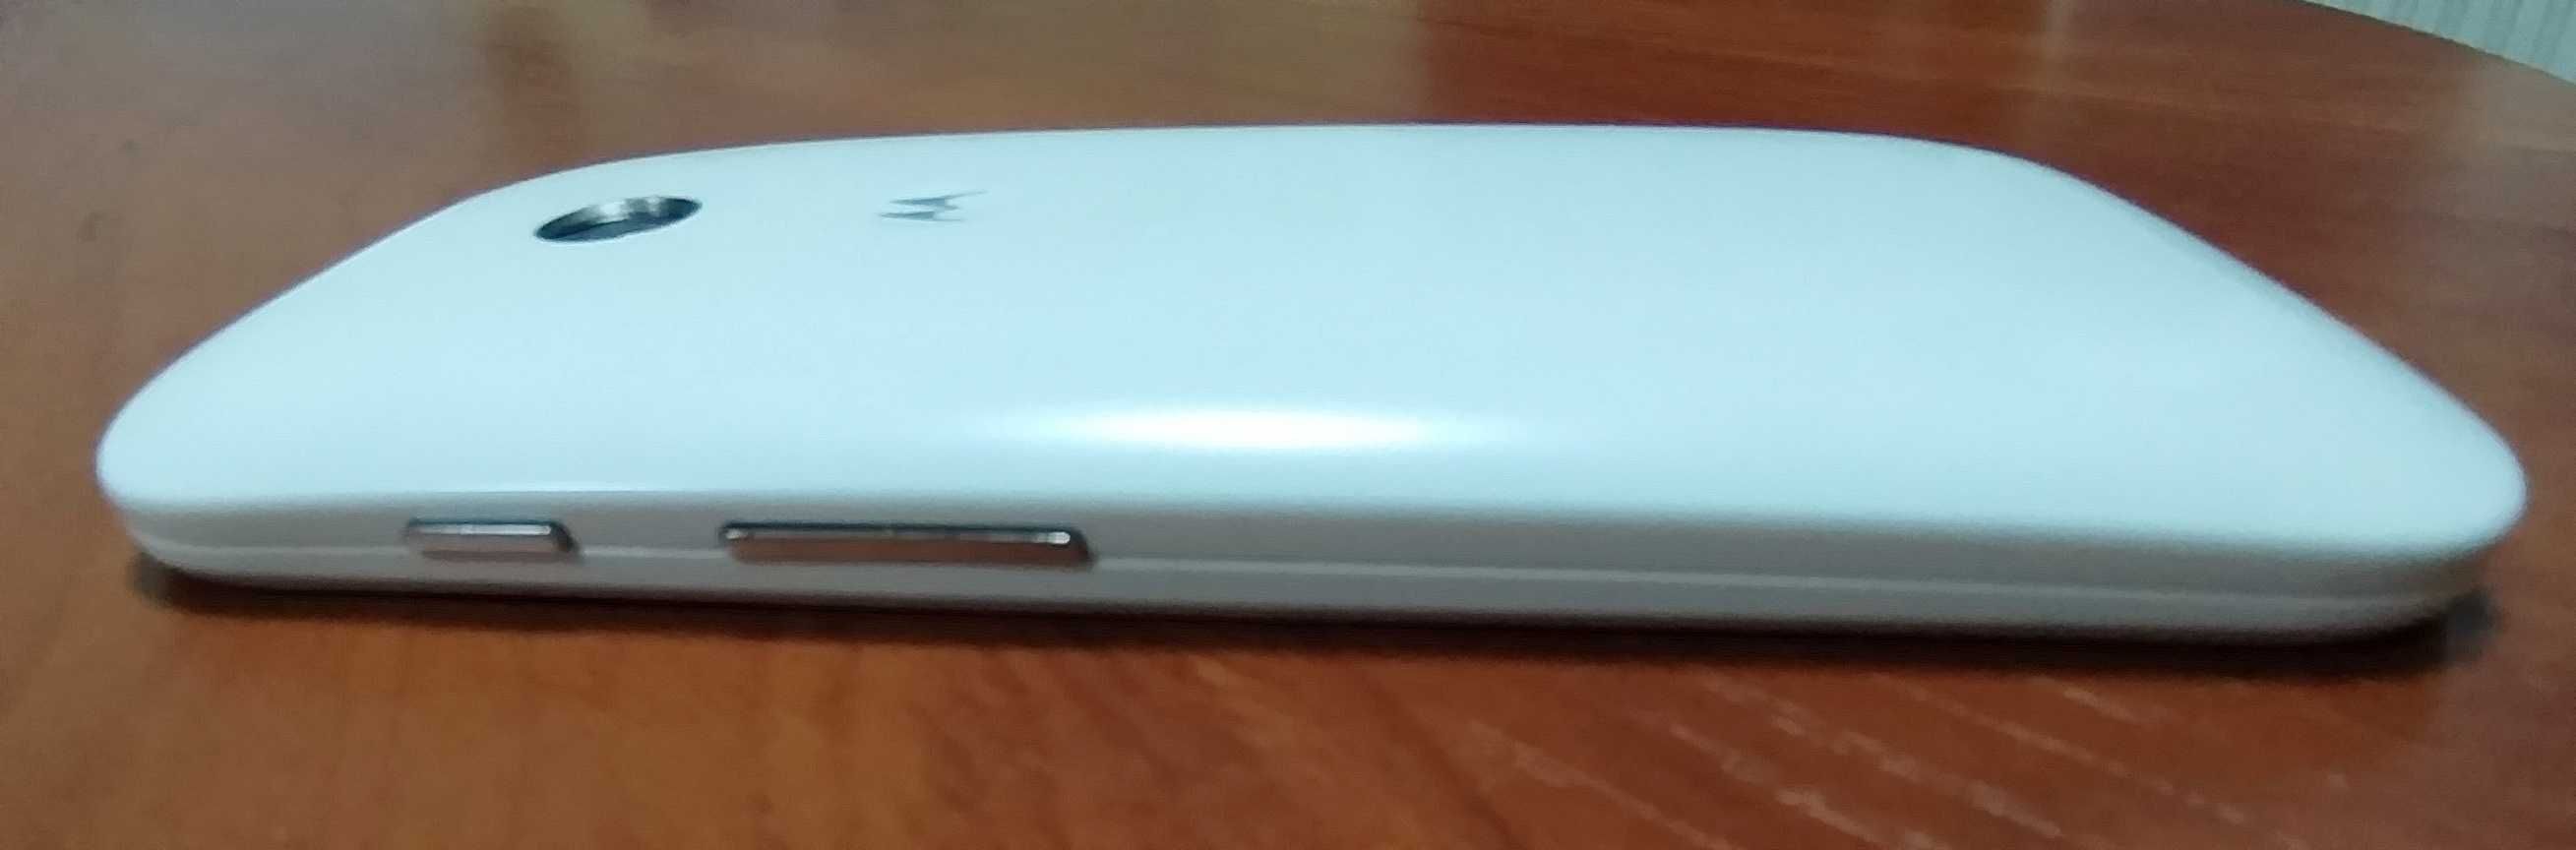 Motorola Moto E (XT1021)